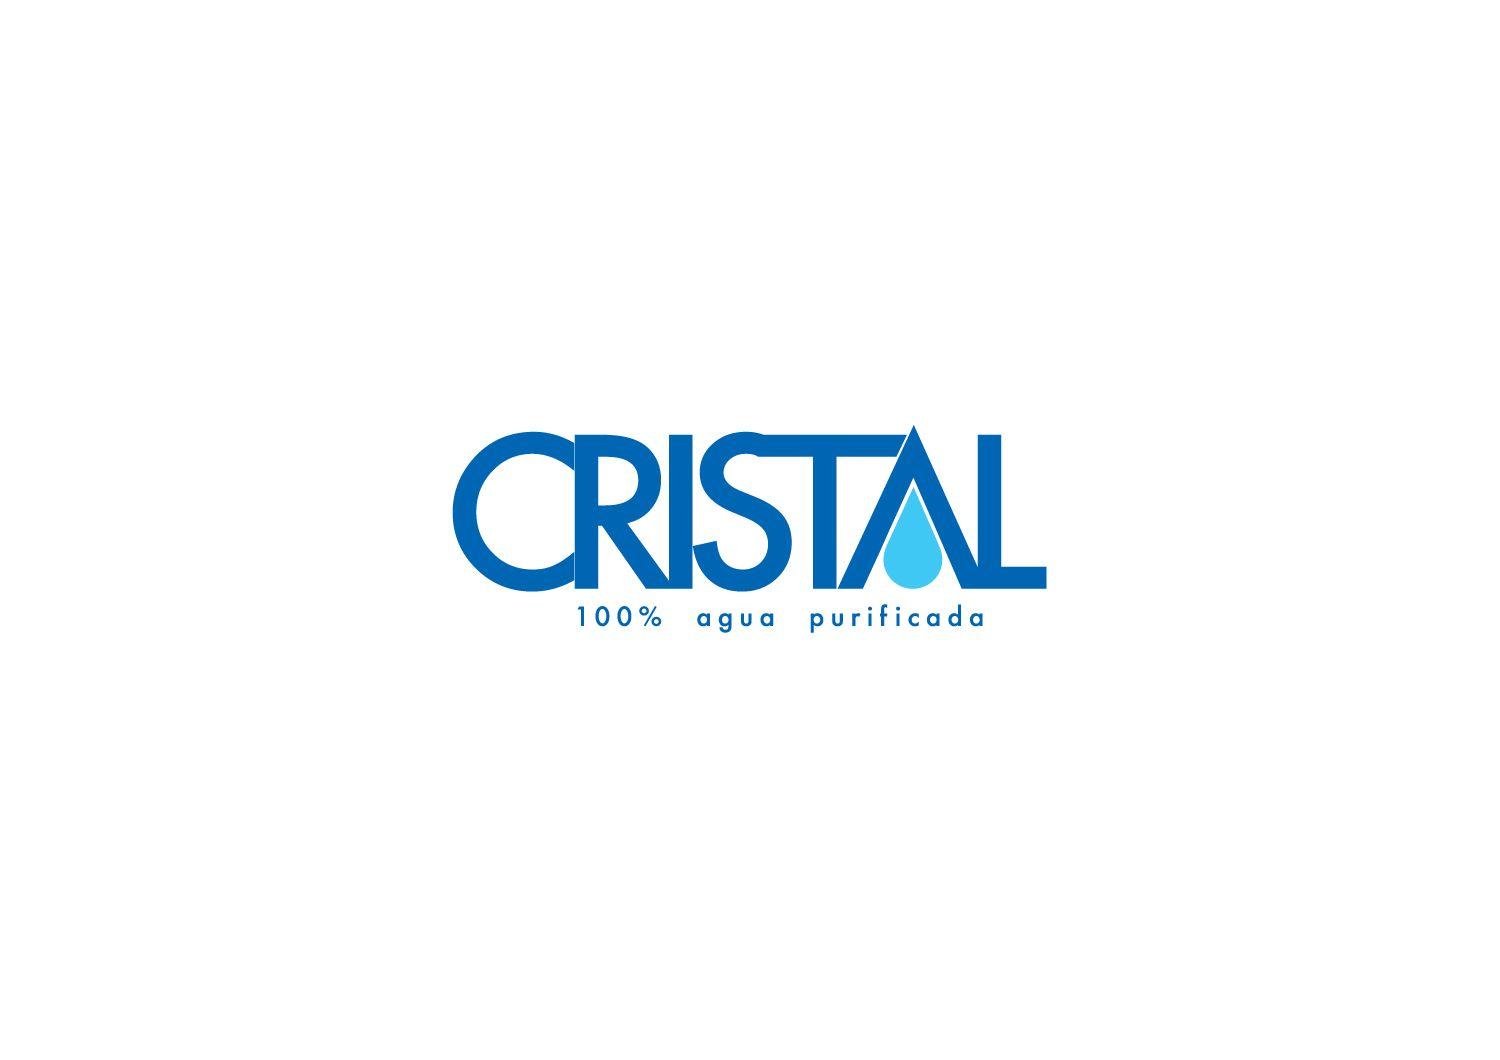 Modern Water Logo - Bold, Modern, Water Company Logo Design for CRISTAL - 100% agua ...